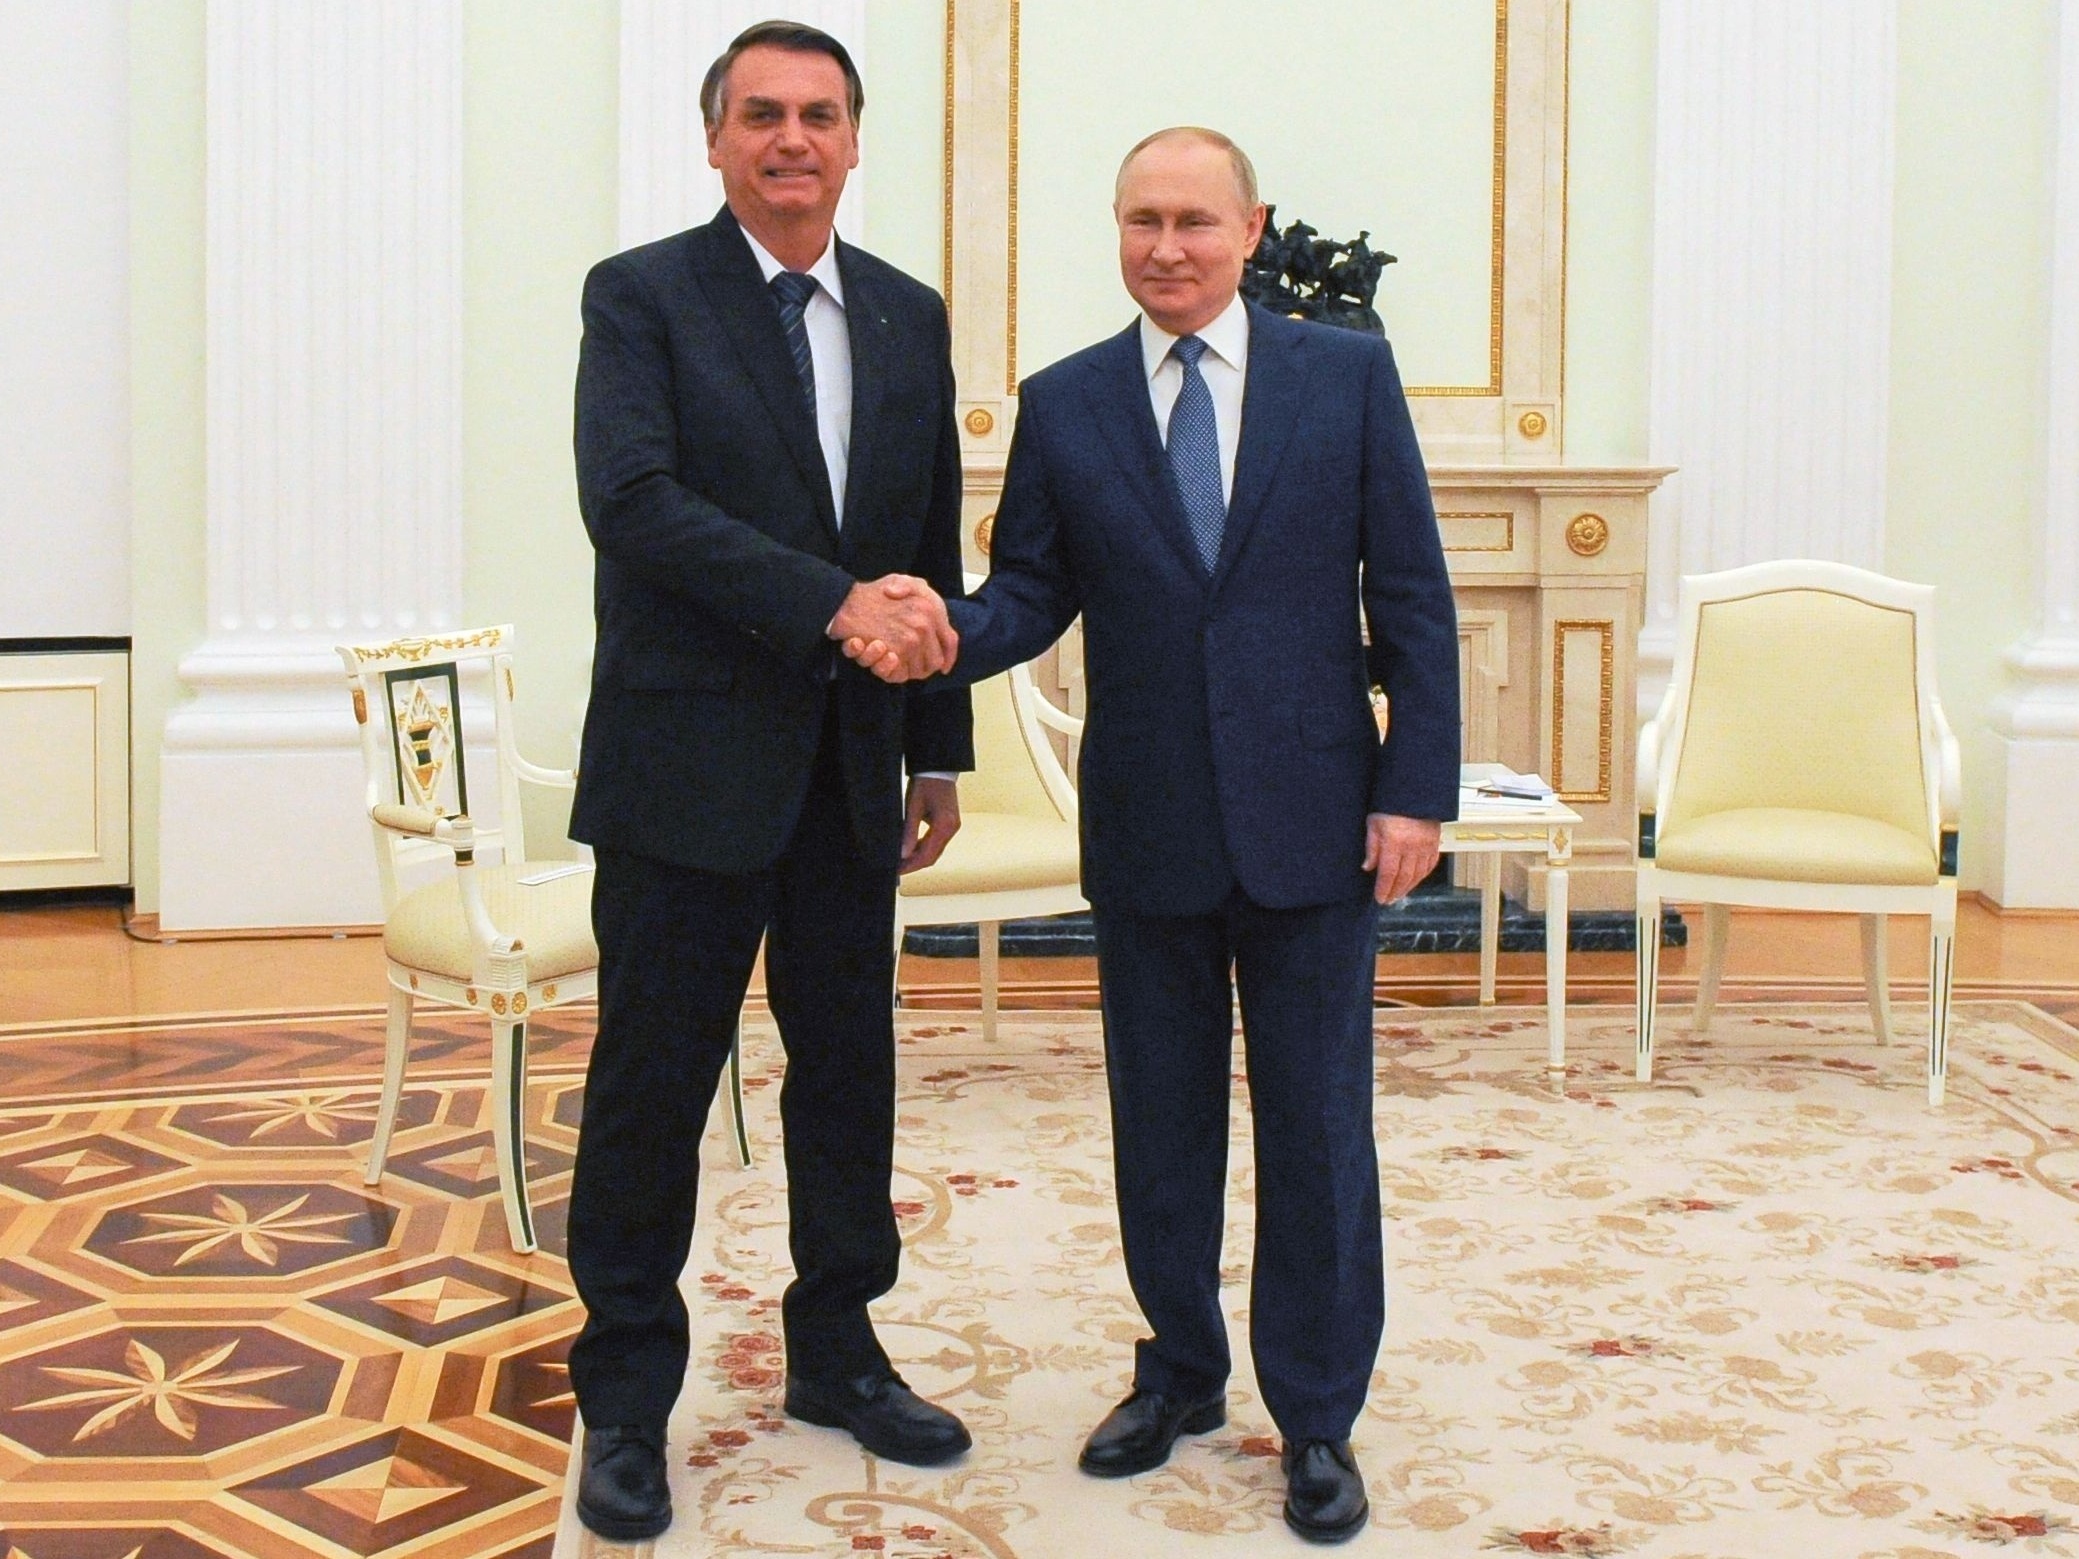 Presidenta do Conselho da Federação da Rússia recebe o Presidente